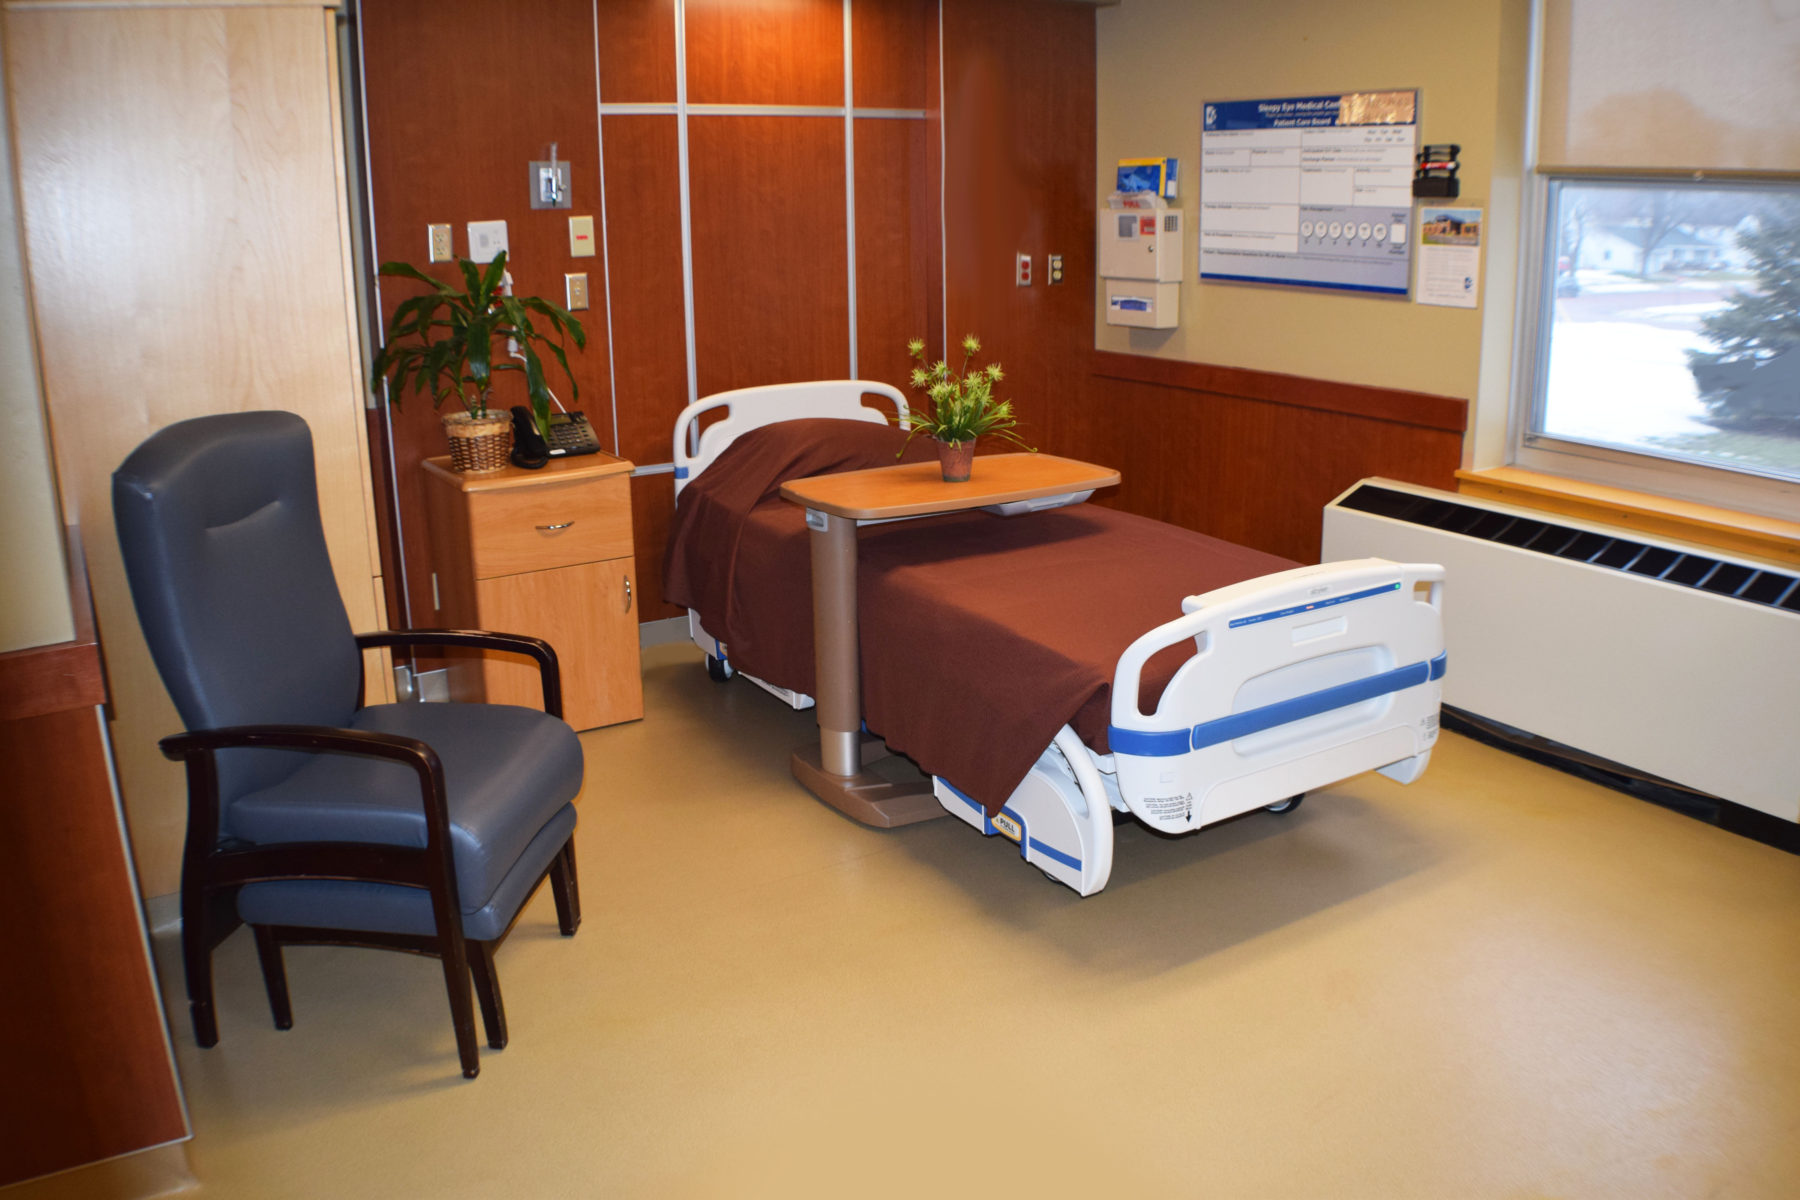 Regular Patient Room